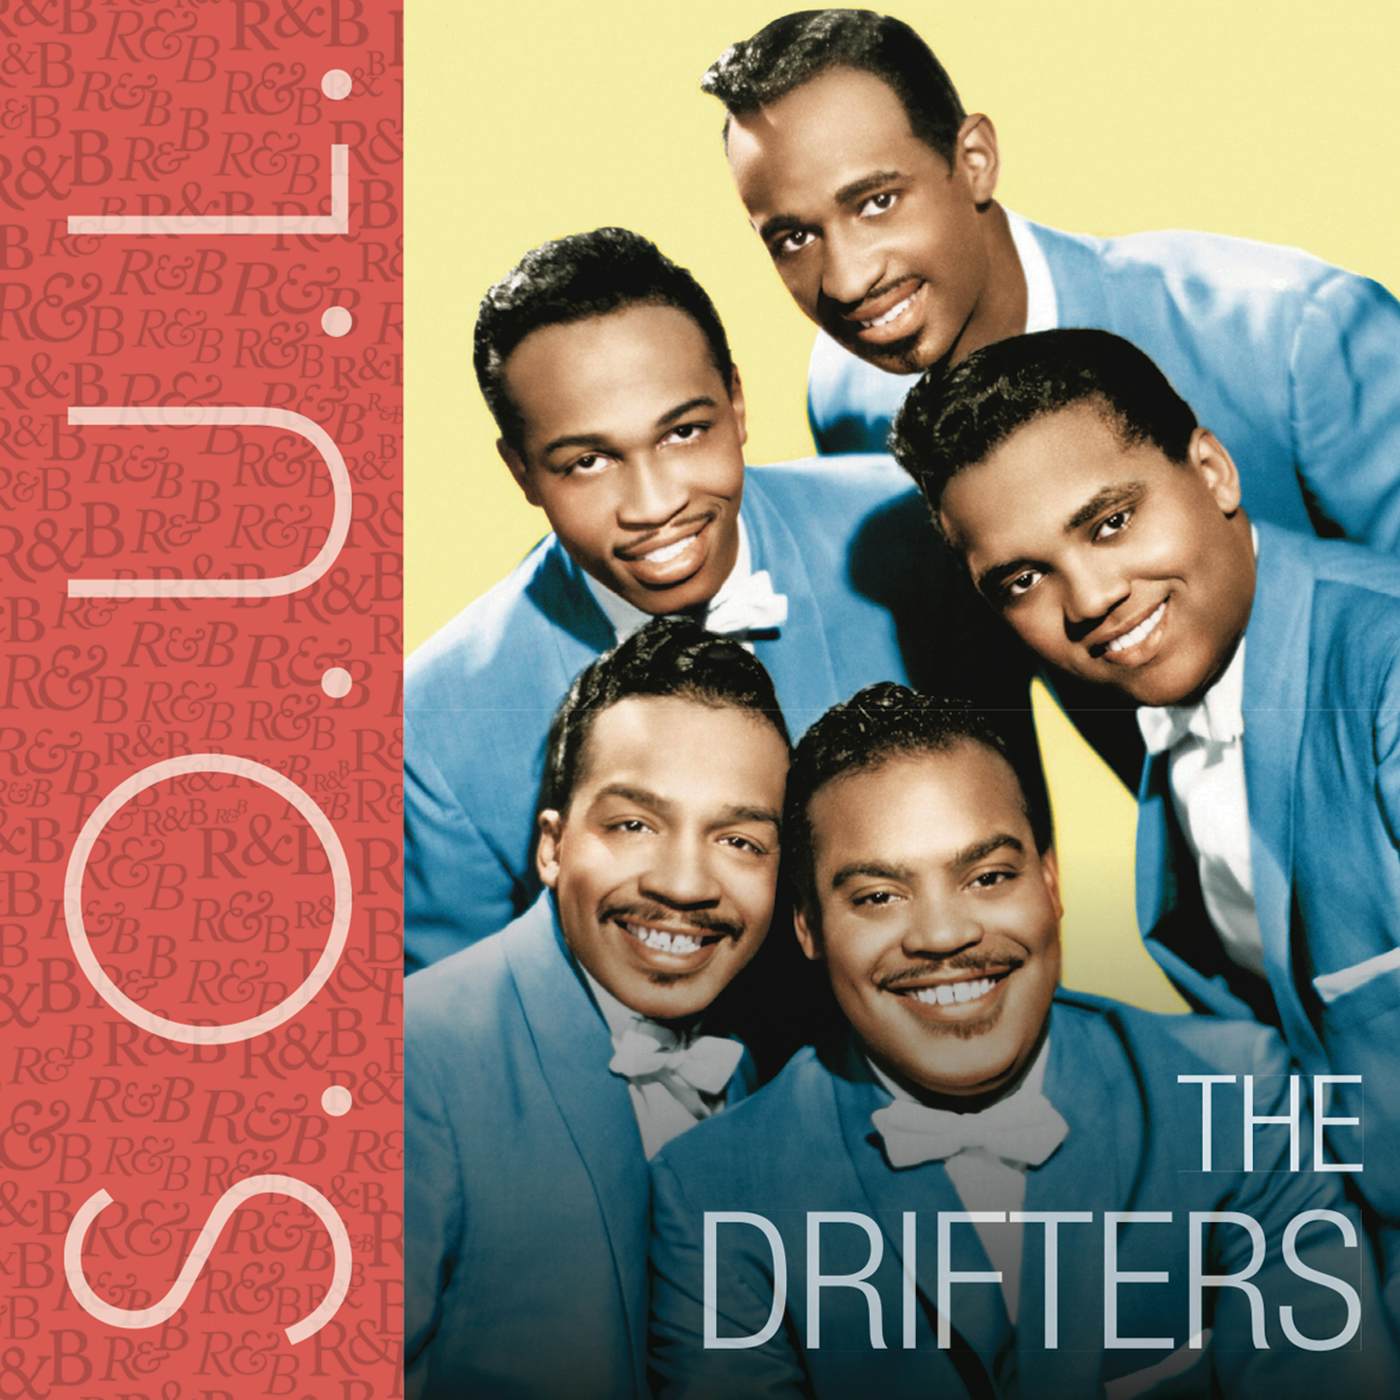 S.O.U.L.: The Drifters CD